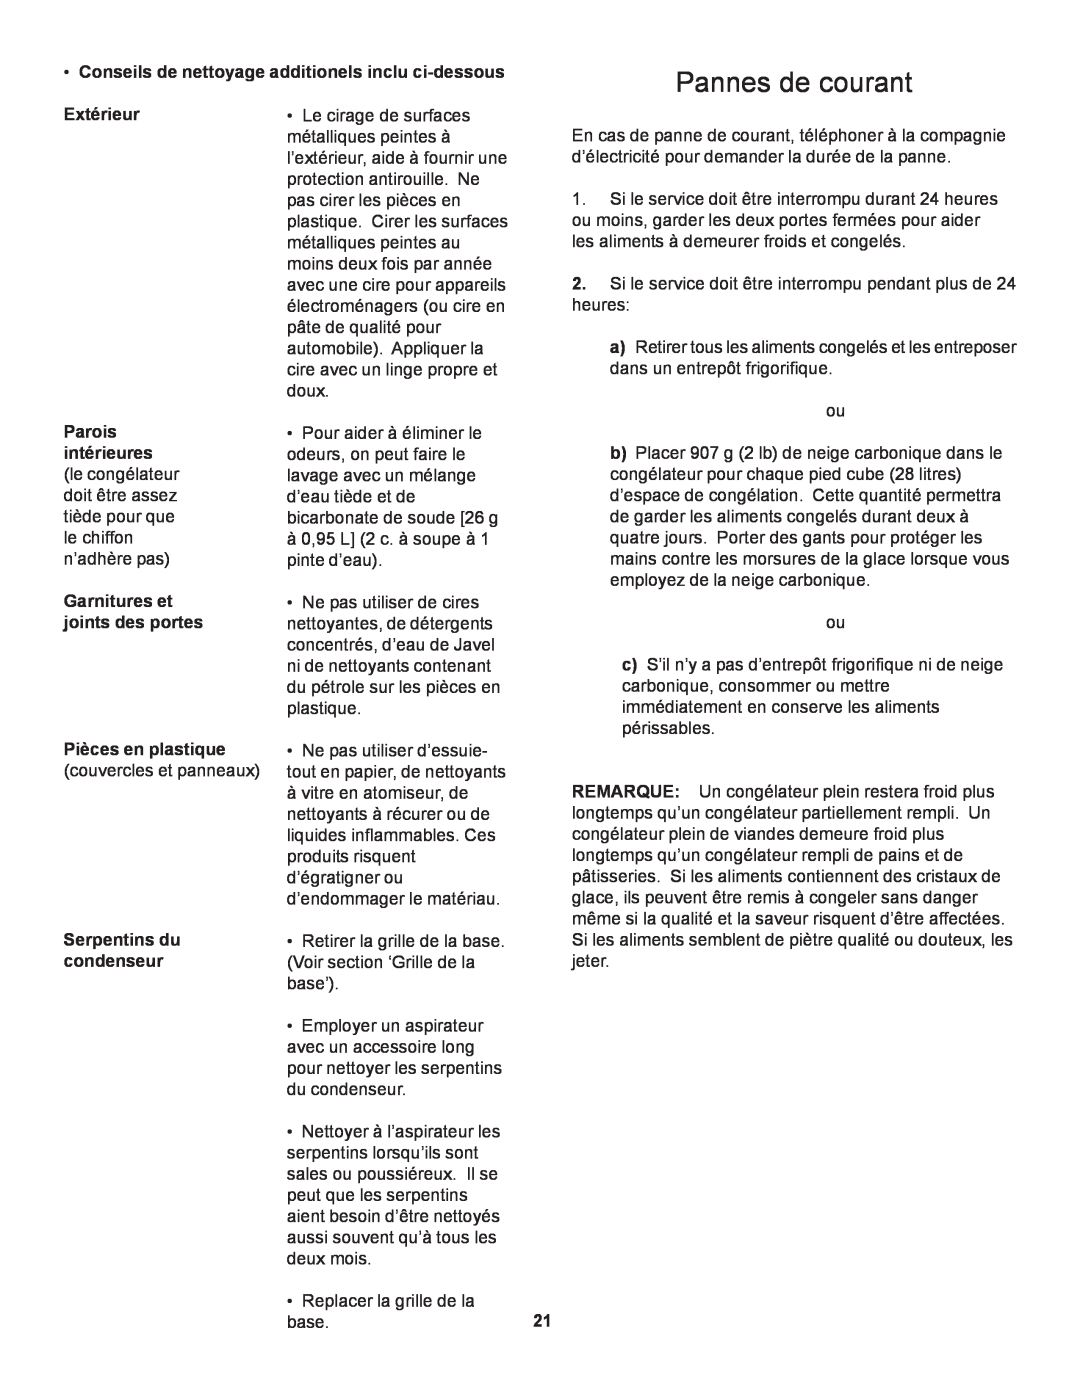 Danby D1866WE manual Pannes de courant, Conseils de nettoyage additionels inclu ci-dessous, Extérieur 